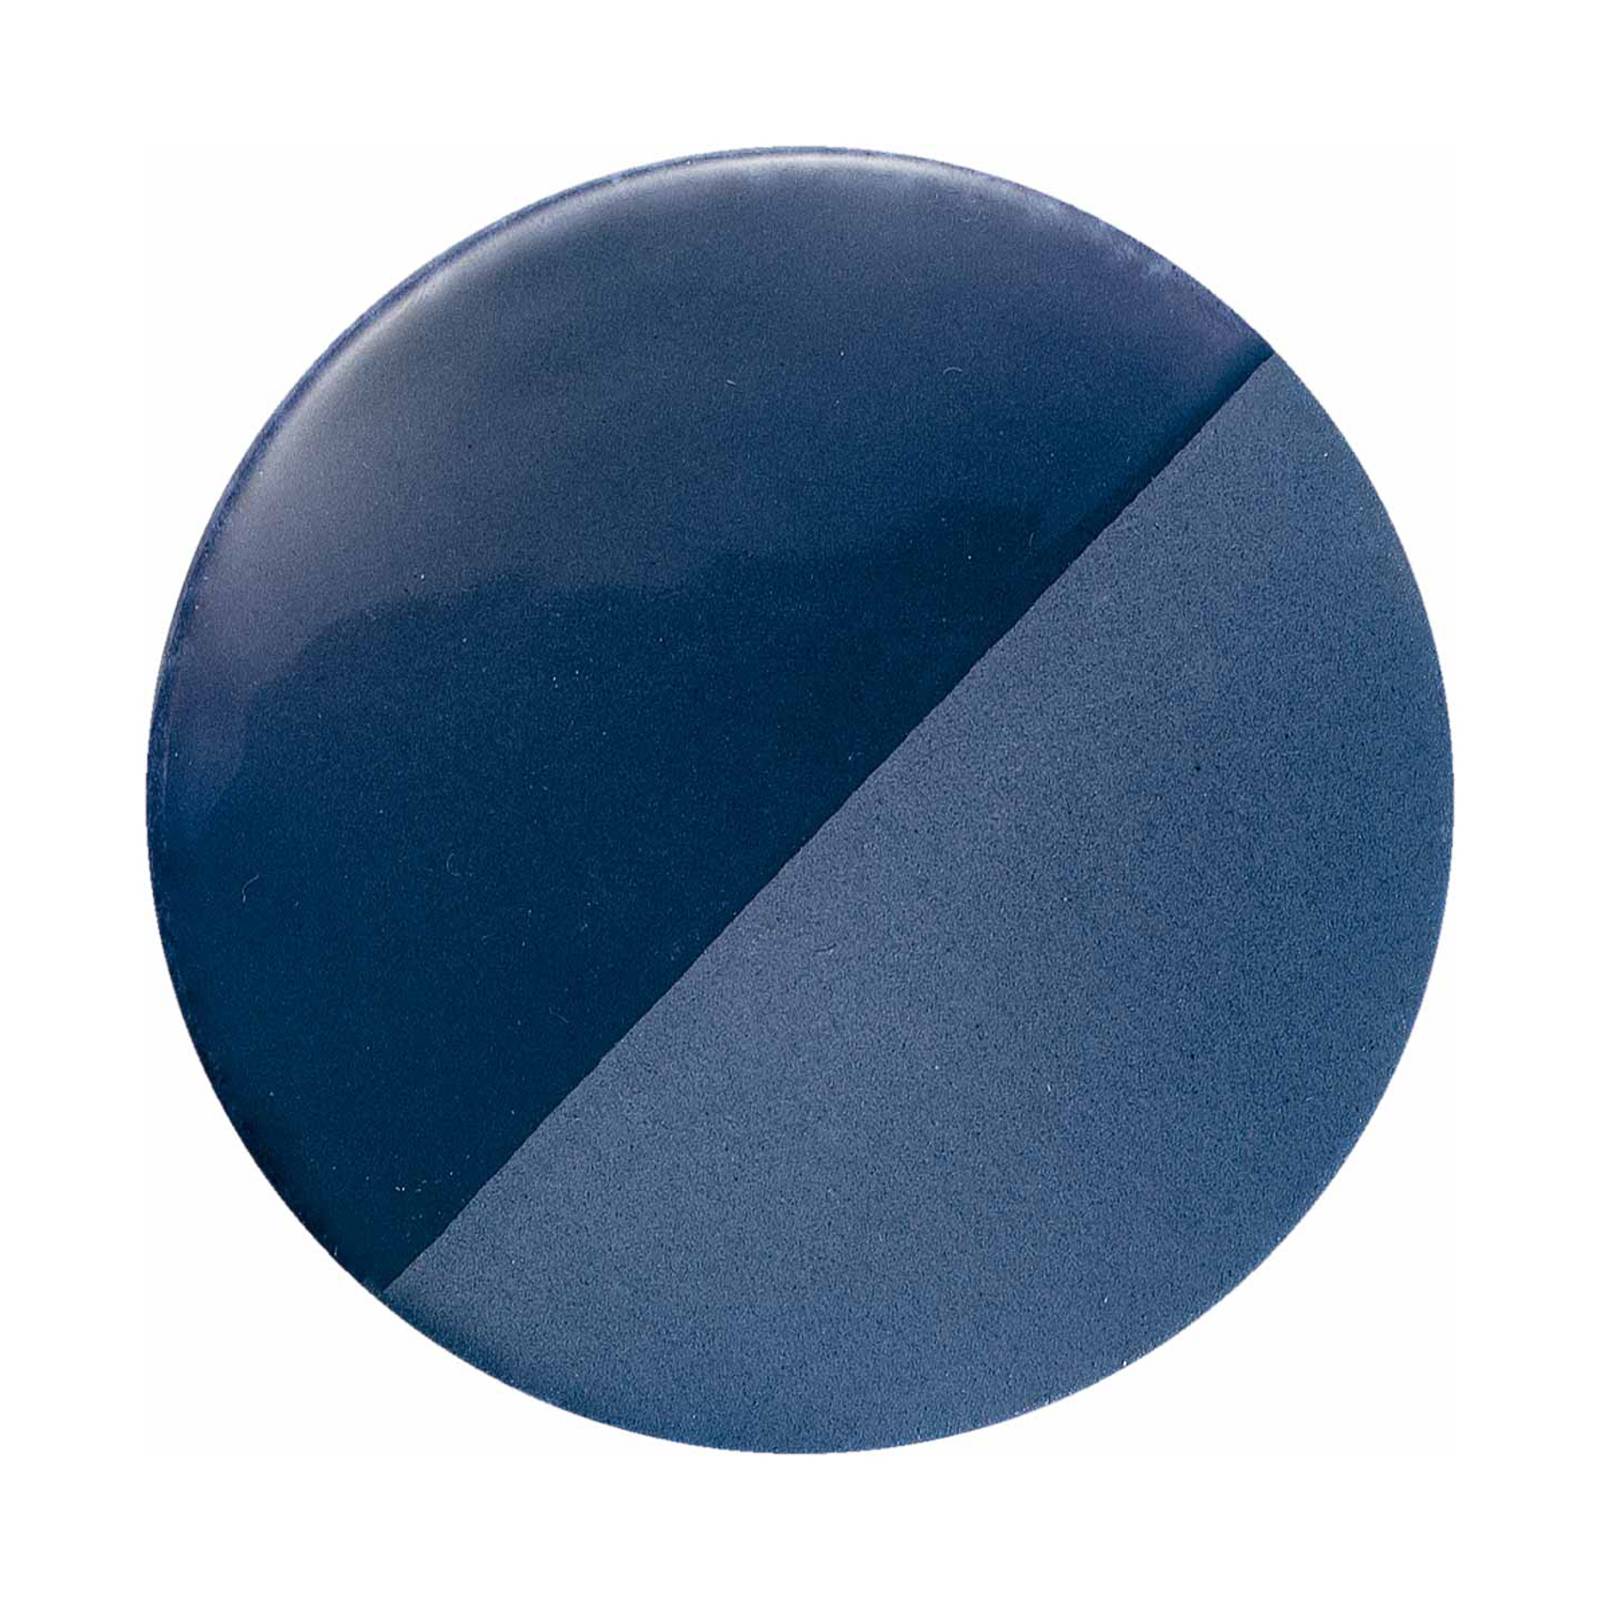 Ferroluce caxixi függőlámpa kerámiából, kék színben